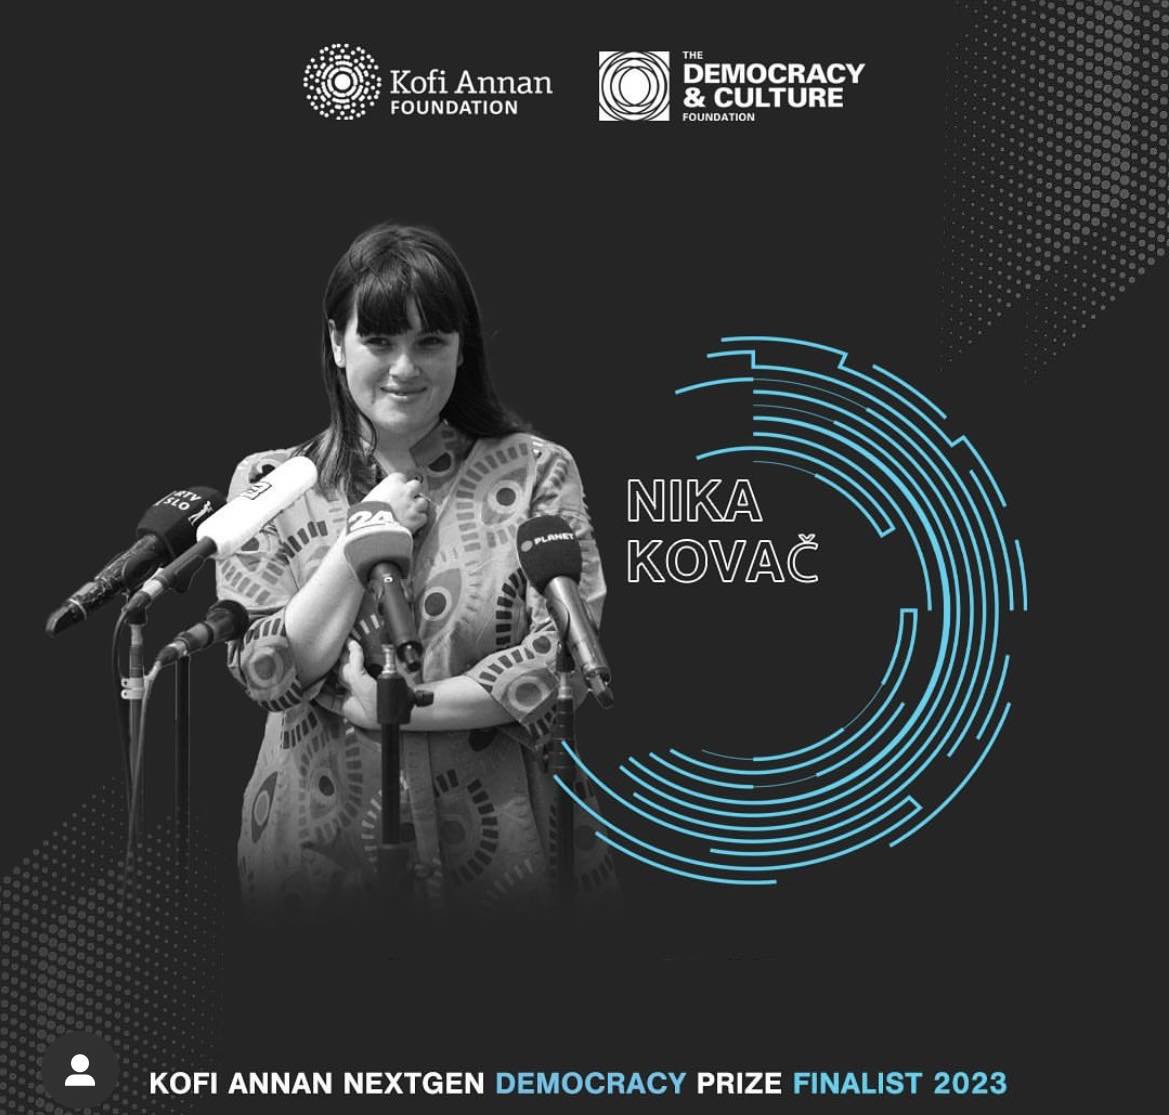 “Aaaa! Končno lahko povemo!!” – Nika Kovač se je uvrstila med 10 finalistov in finalistk za globalno nagrado Kofi Annan “nextgen democracy prize”